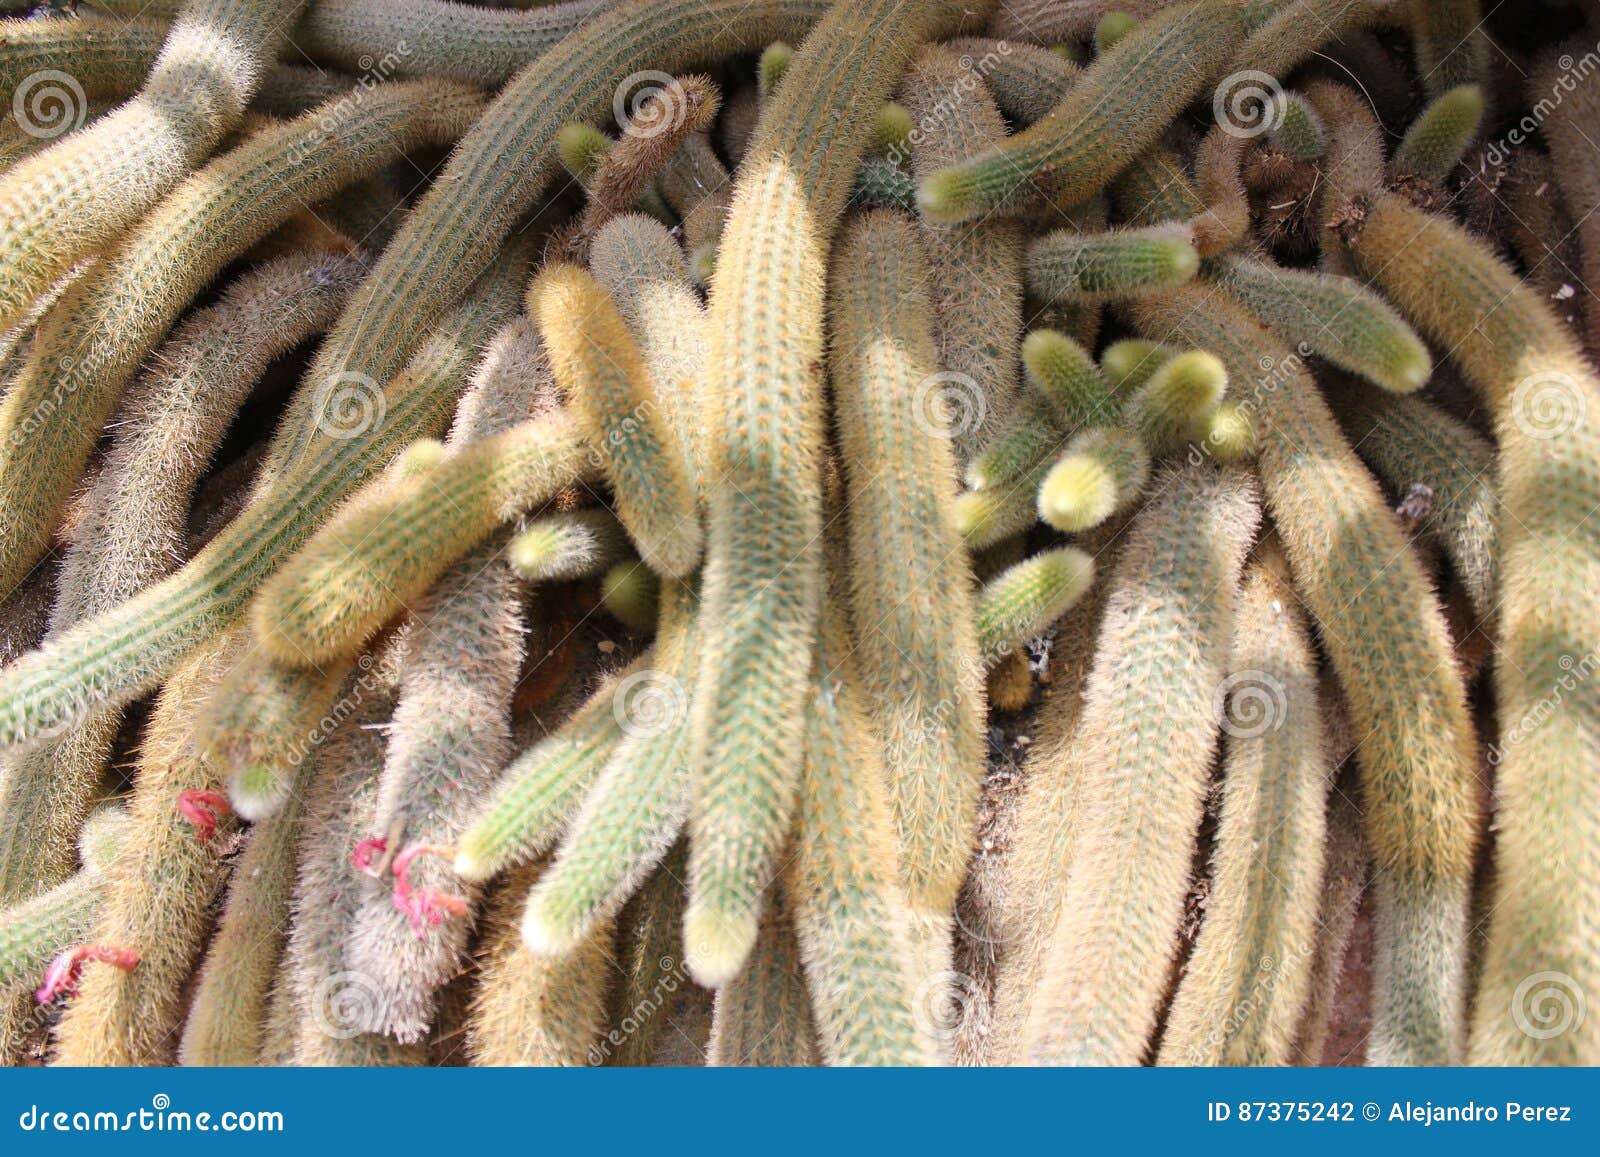 mace of cactus